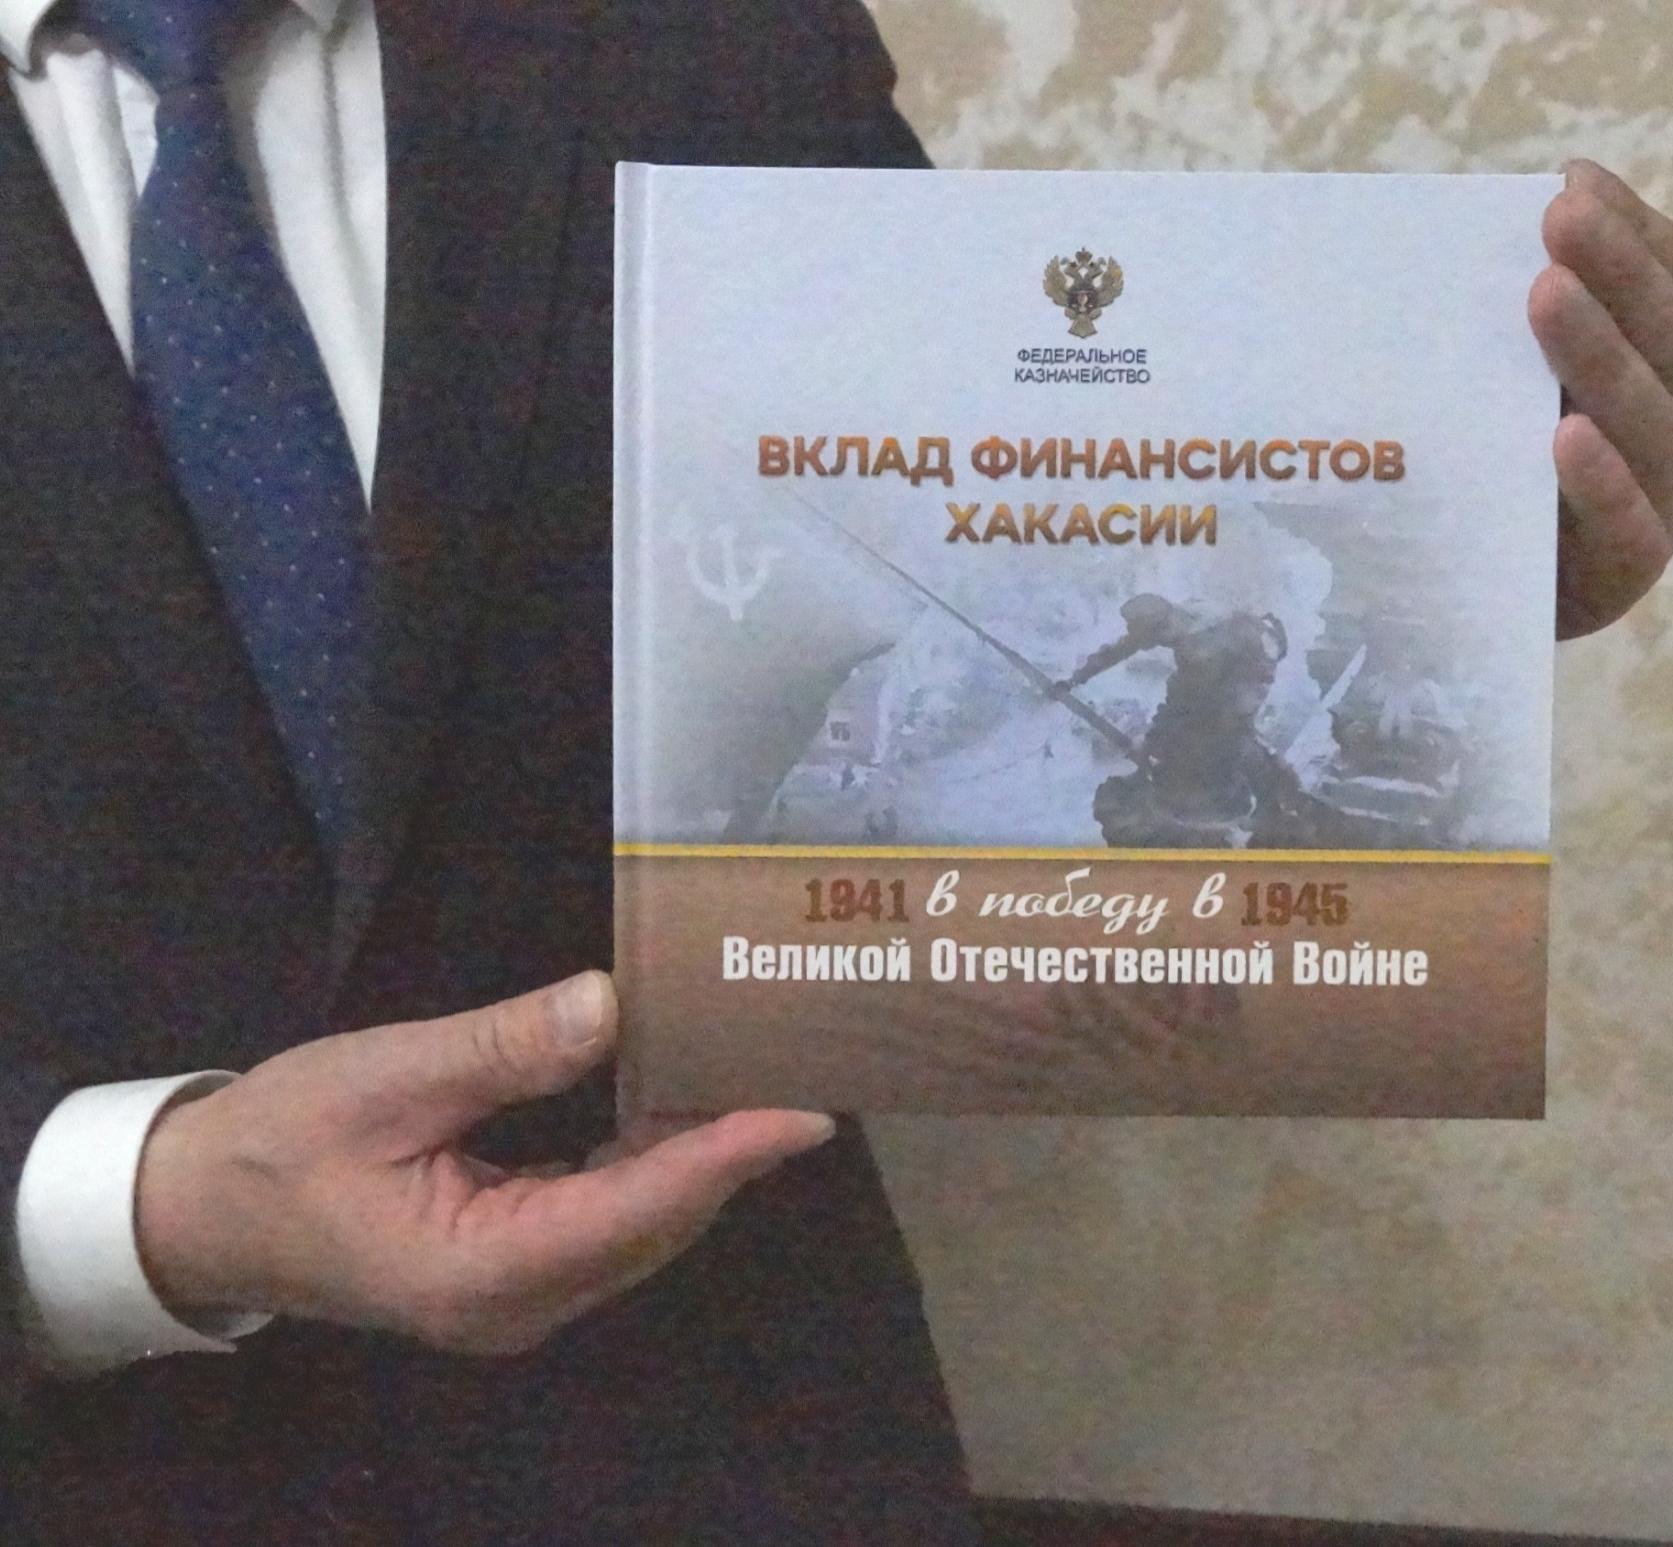 04 мая 2022 состоялась презентация книги «Вклад финансистов Хакасии в Победу в Великой Отечественной войне 1941-1945 гг.» 